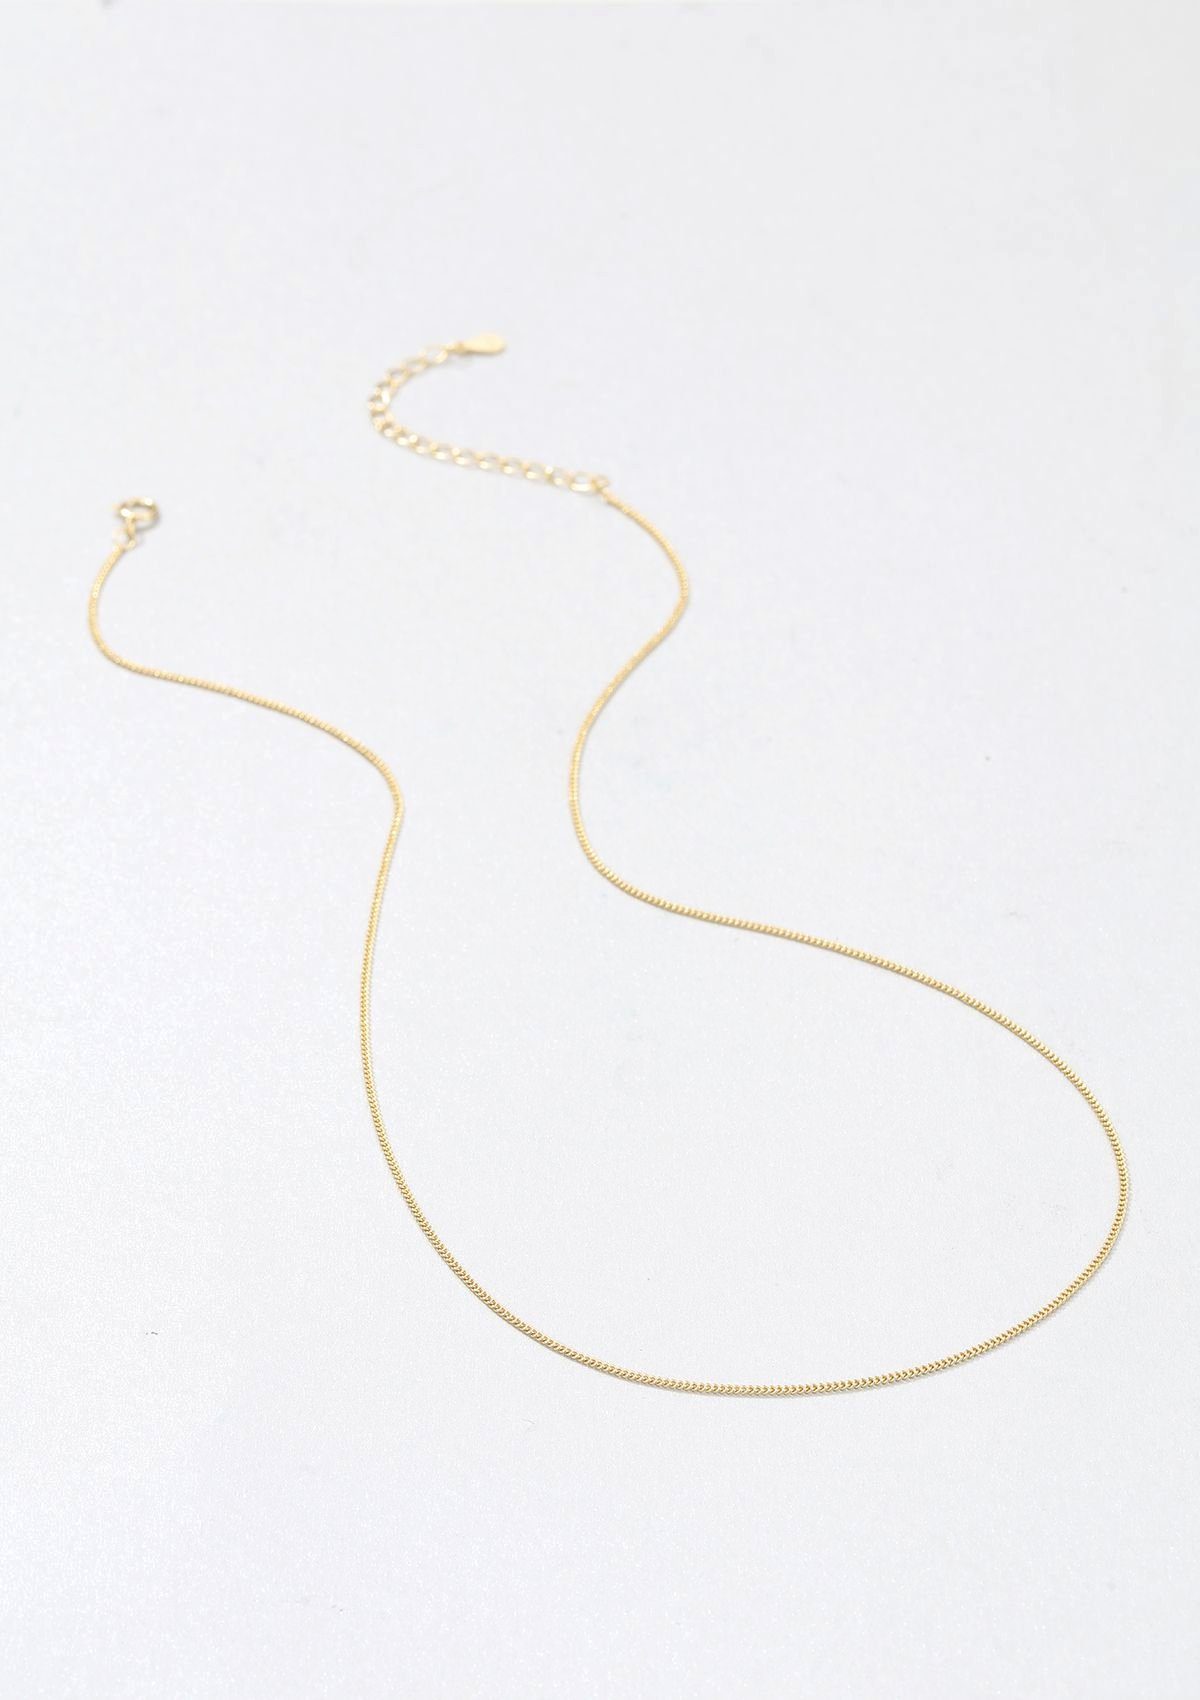 Hey Happiness Silber fein Vergoldet Halskette Look 18K, Layer strukturiert Damen zum Silberkette Kombinieren, hypoallergen 925